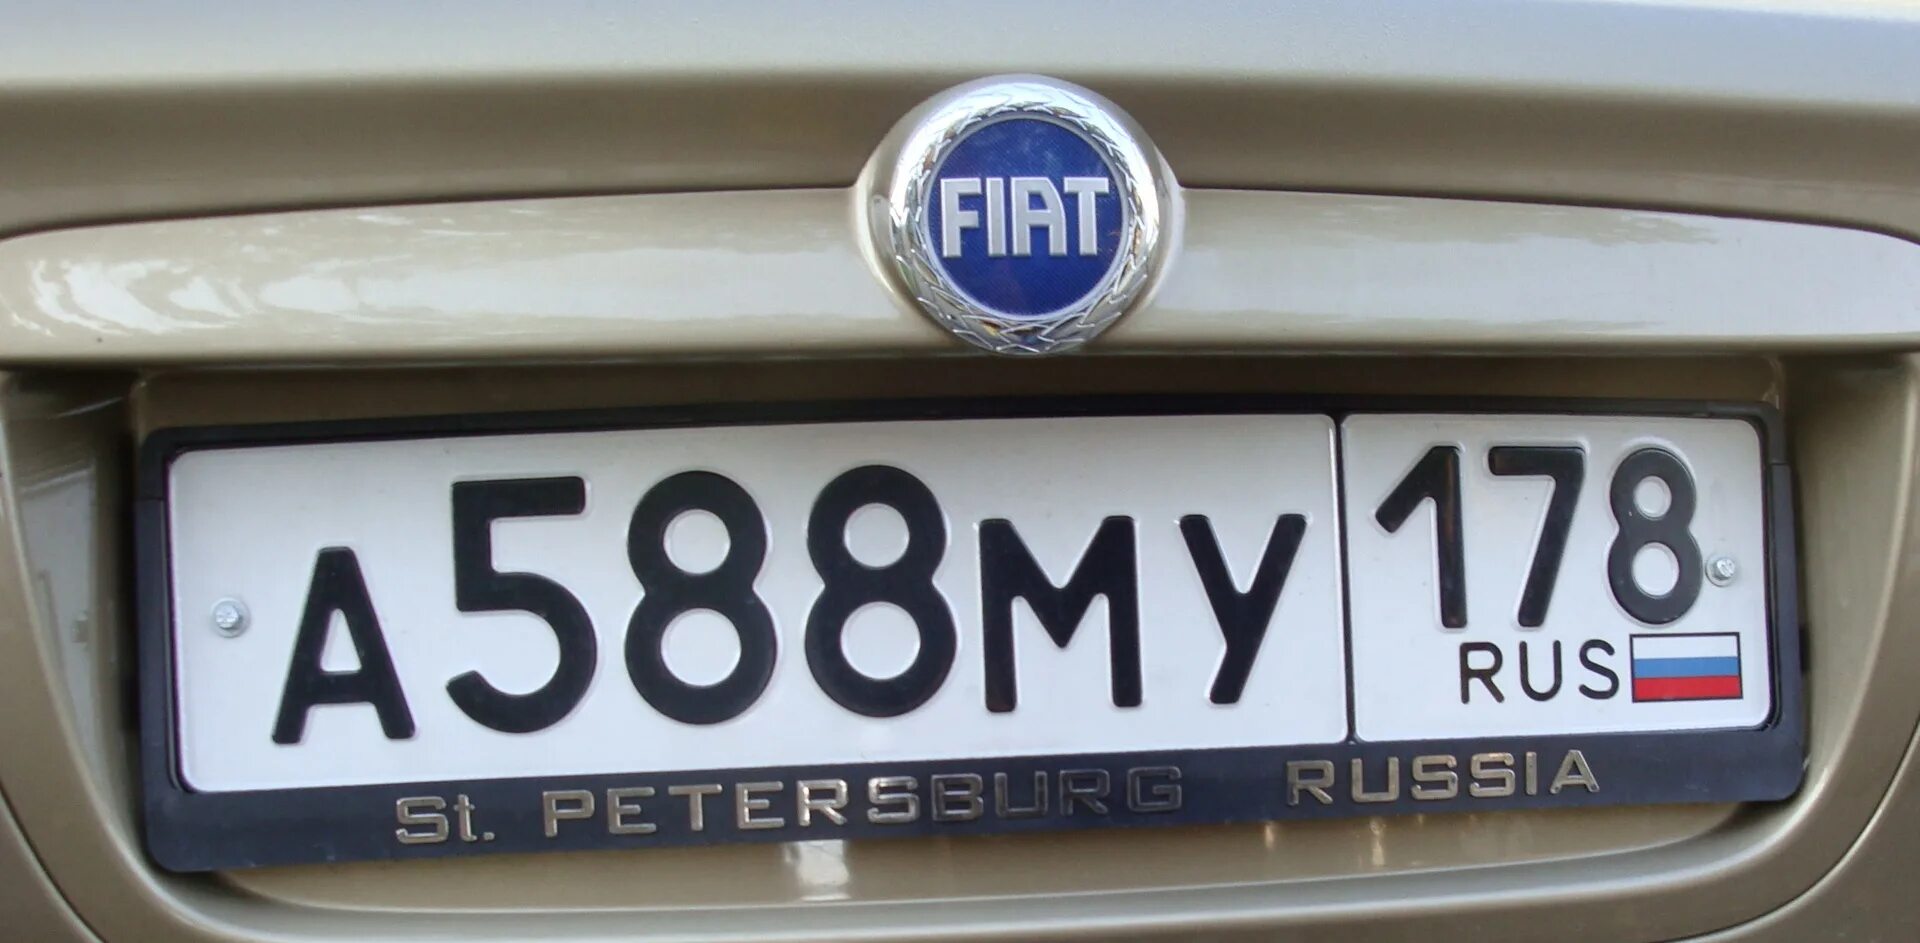 Сайт гос номеров авто. Регистрационный номер автомобиля. Автономера на машины таблички. Российский автомобильный знак. Номер на машине 178.